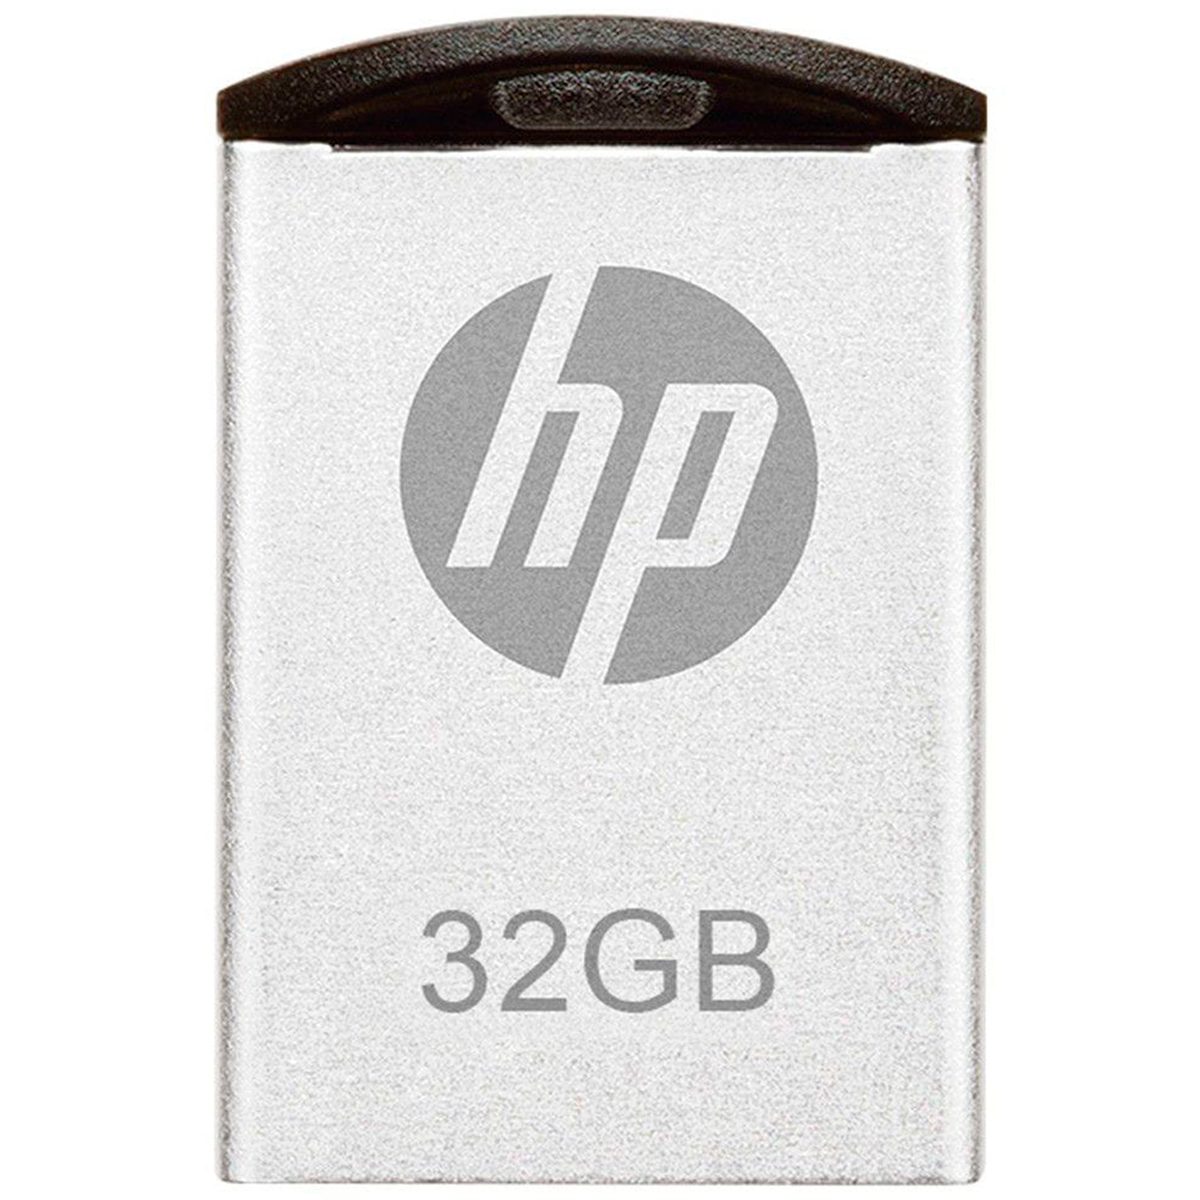 Pen Drive 32GB HP Mini V222W - USB - HPFD222W-32P [i]